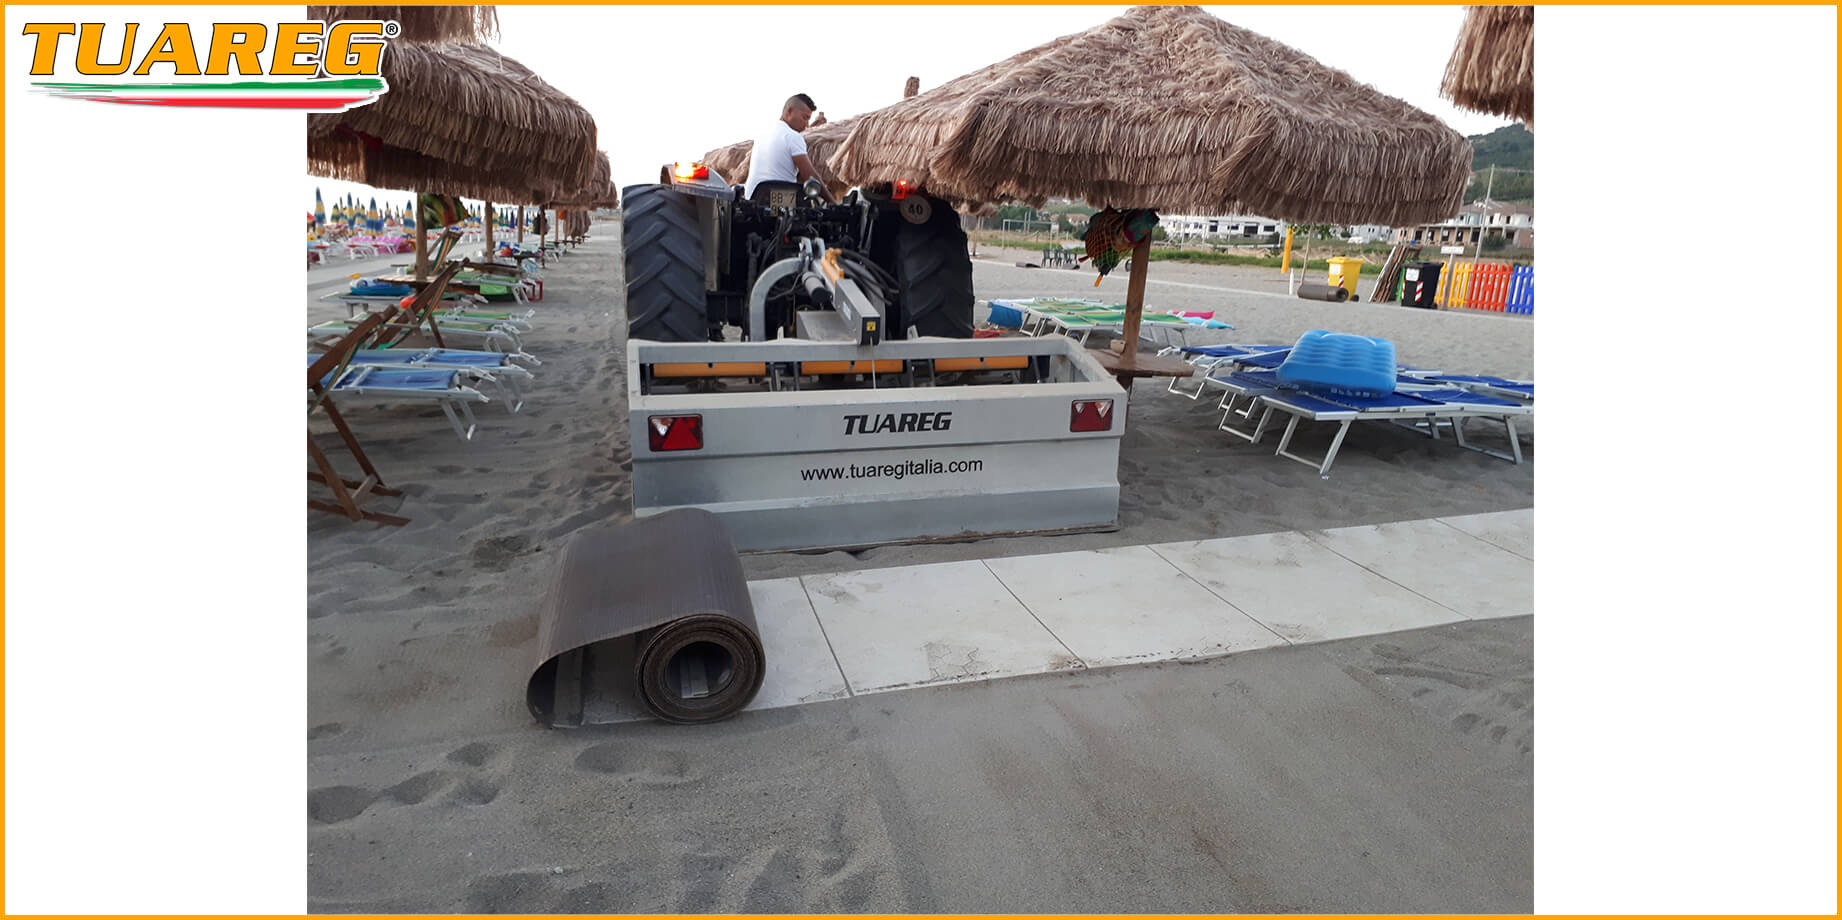 Alfombra/Pasarela de Playa Enrollable - Tuareg Access - Producto/Accesorio de Accesibilidad a la Playa